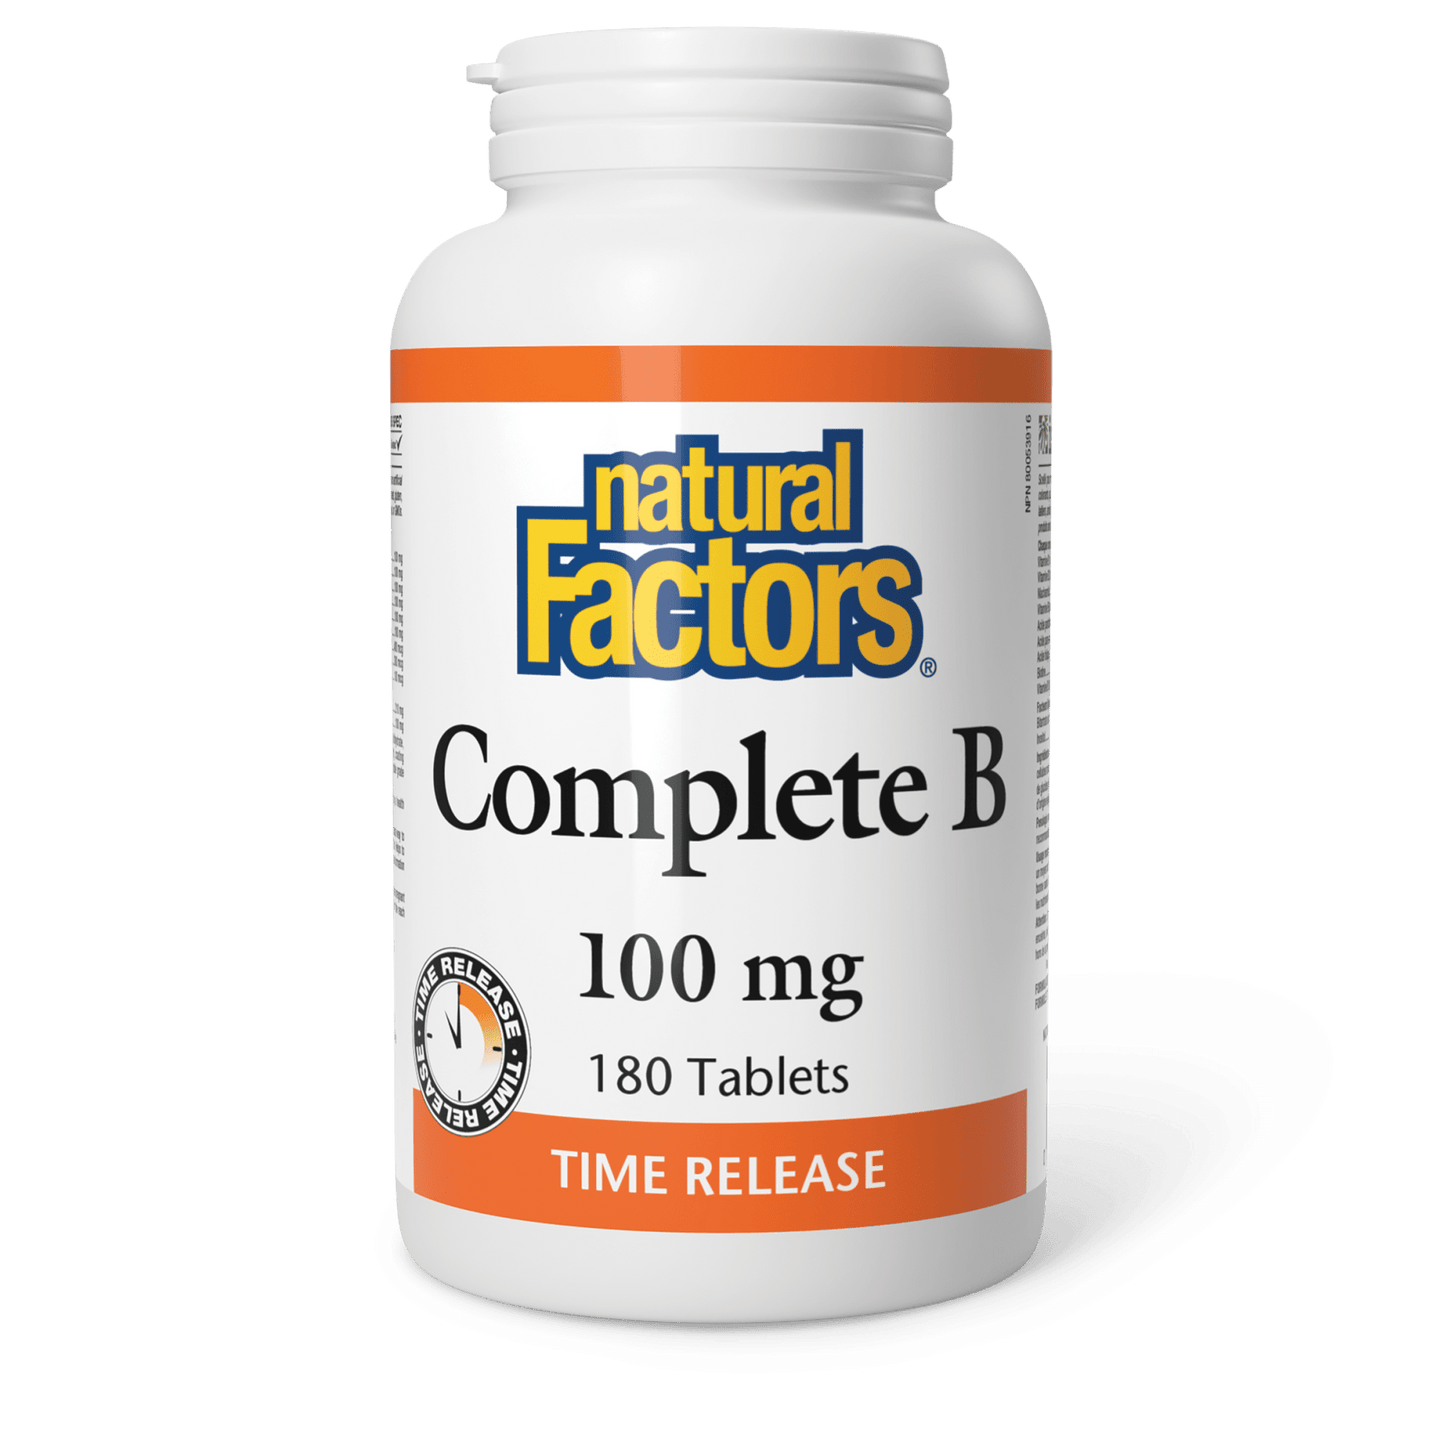 Complete B Timed Release 100 mg, Natural Factors|v|image|1142